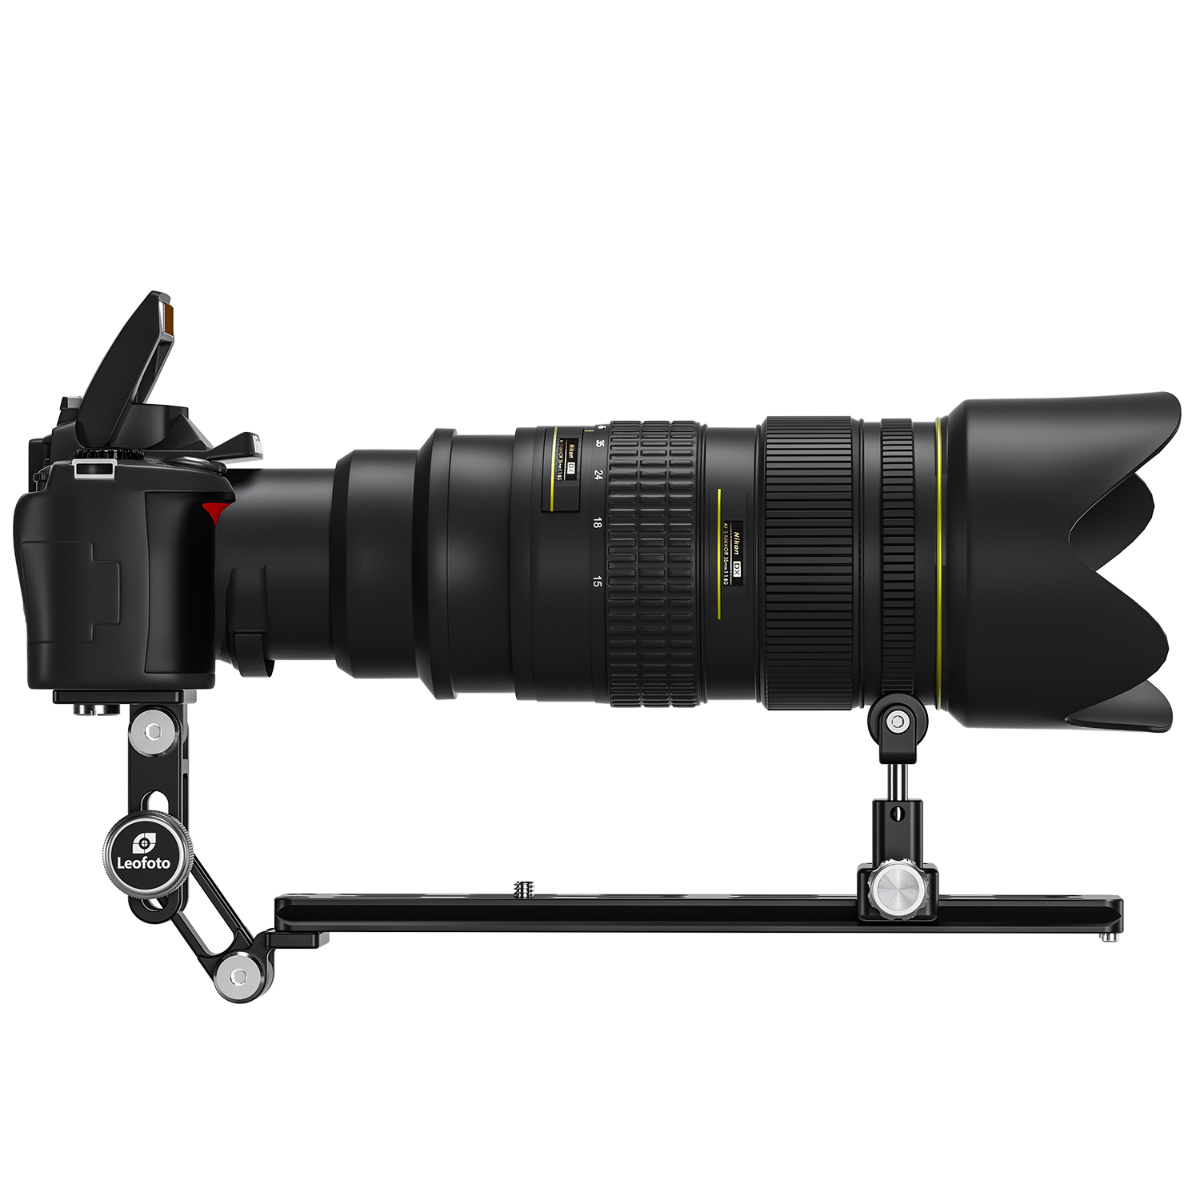 ふるさと納税ふるさと納税LEOFOTO マンフロット用レンズサポートプレート VR-380 カメラアクセサリー 